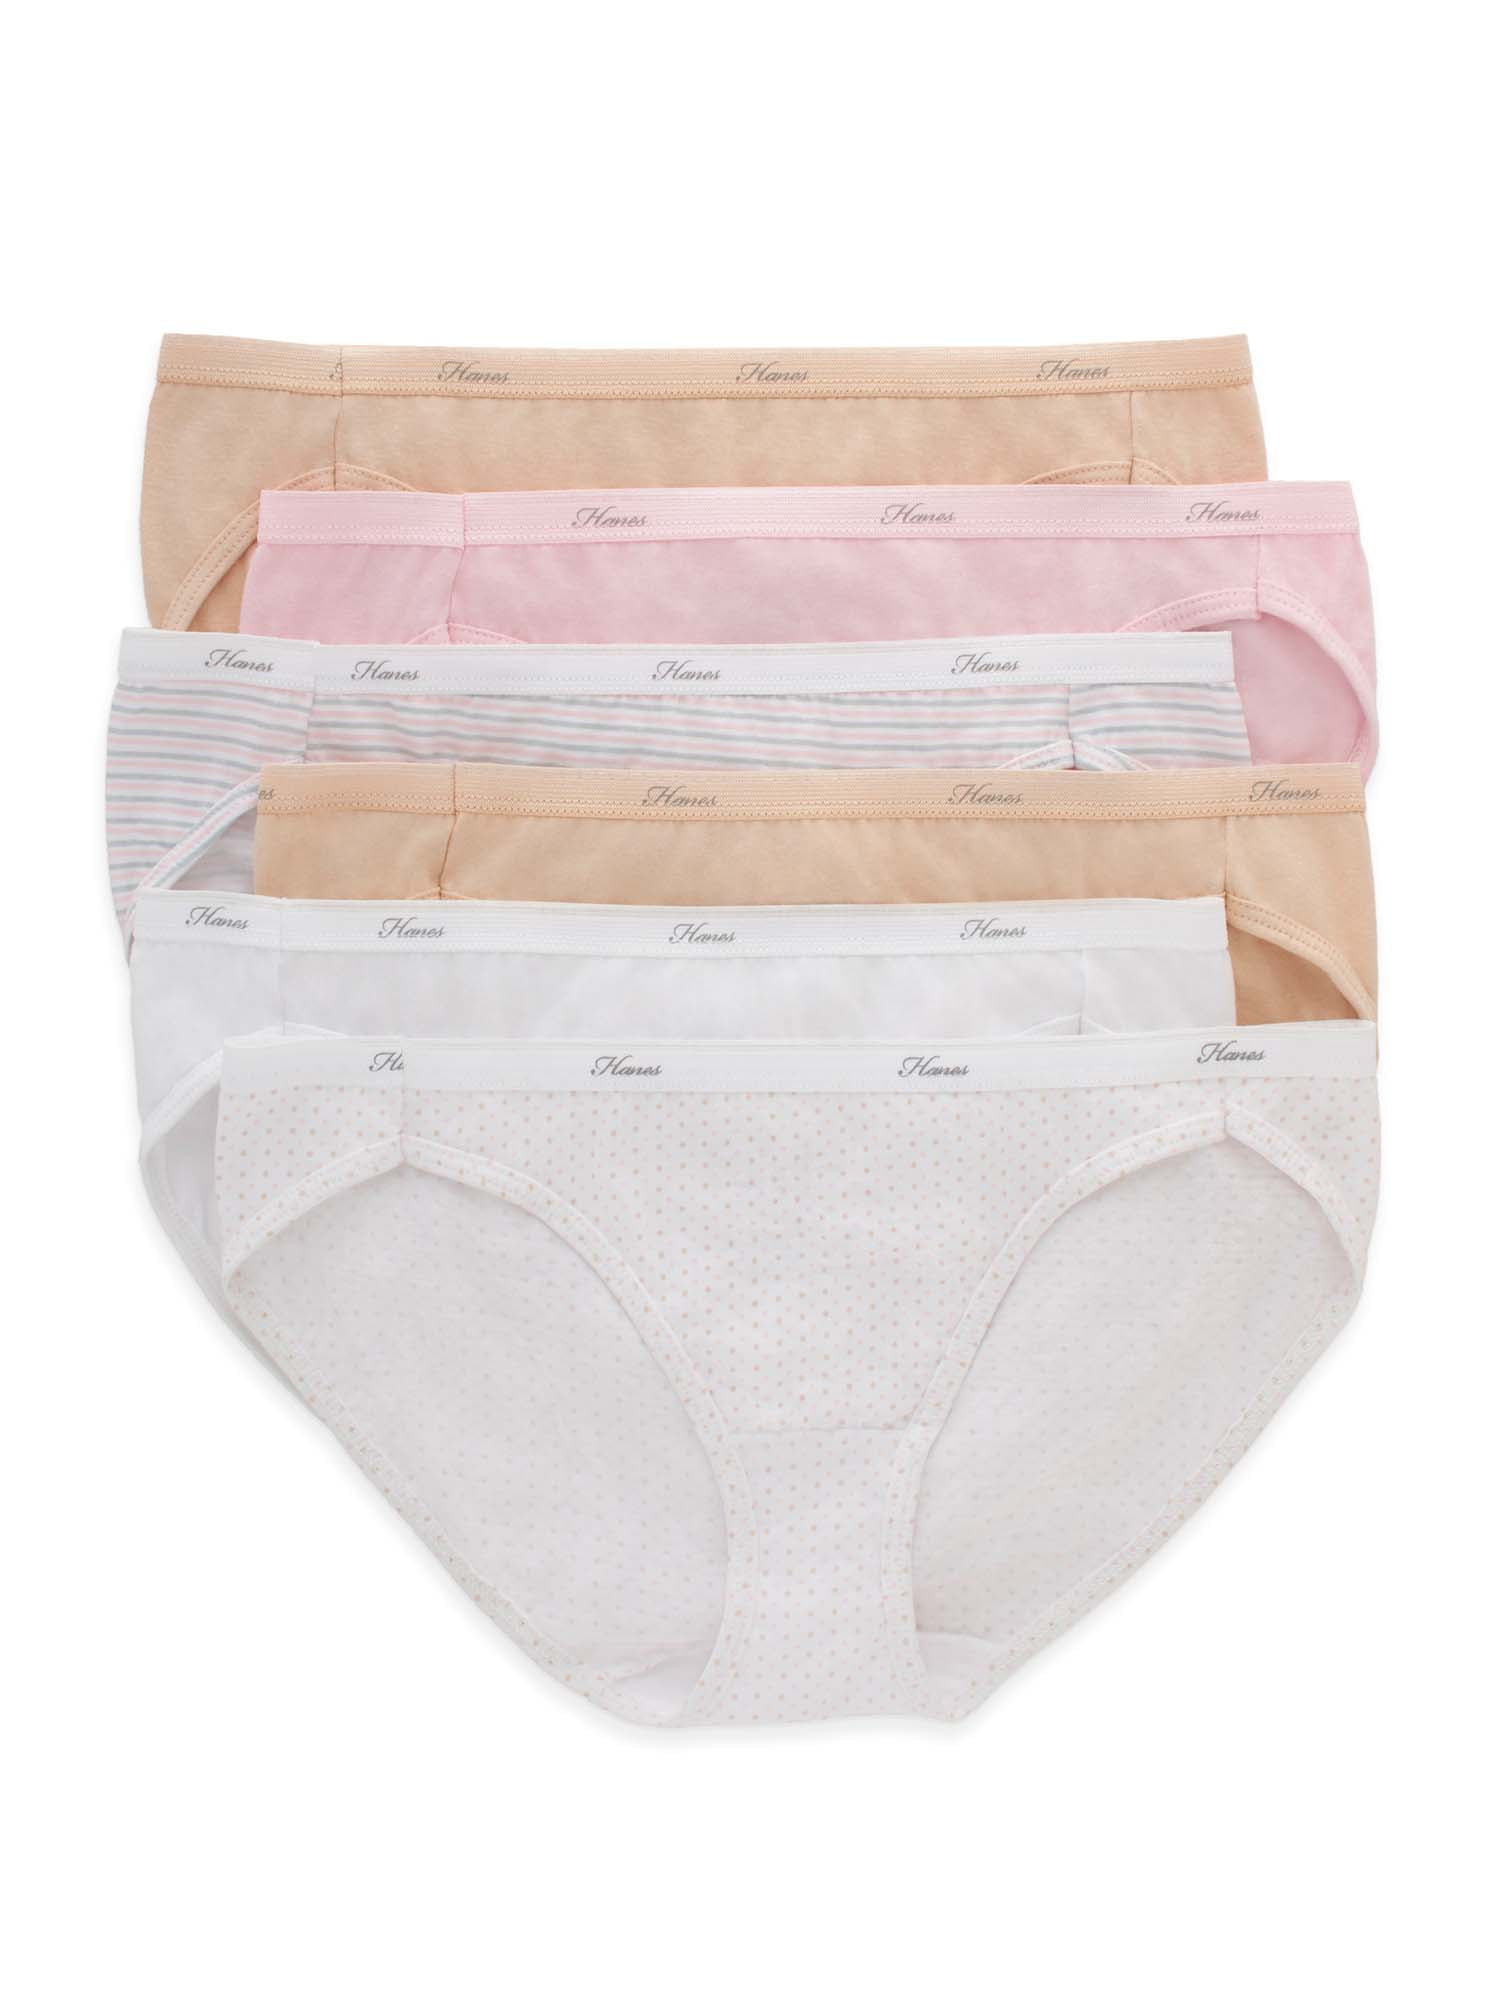 Hanes 6-Pack Hi-Cut Panties Cotton Womens Underwear Nepal